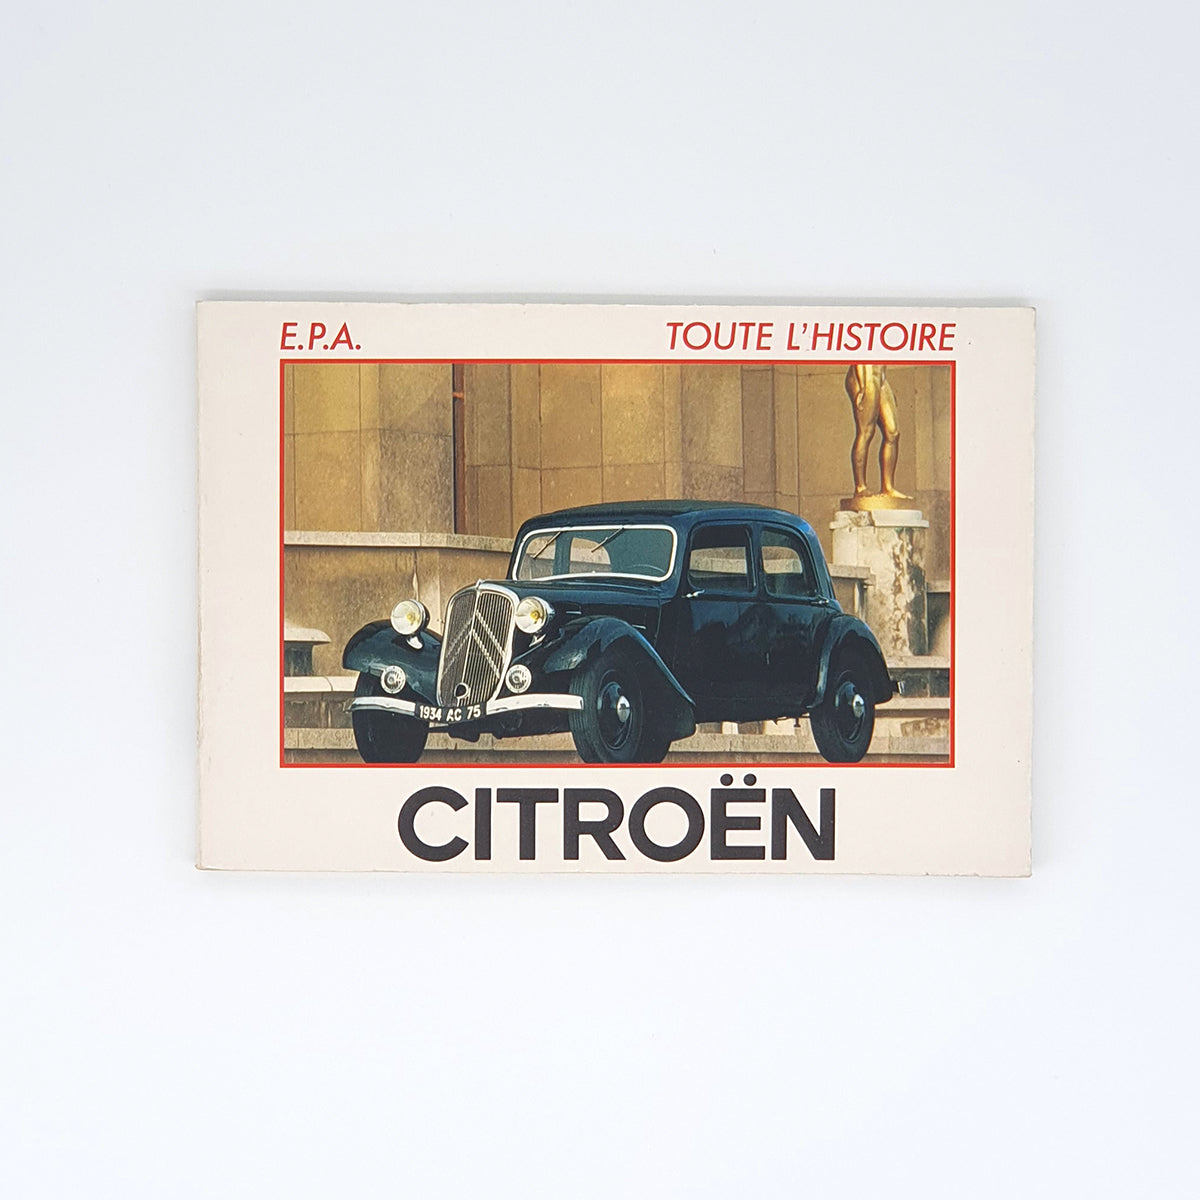 Toute l'histoire Citroën Traction Avant